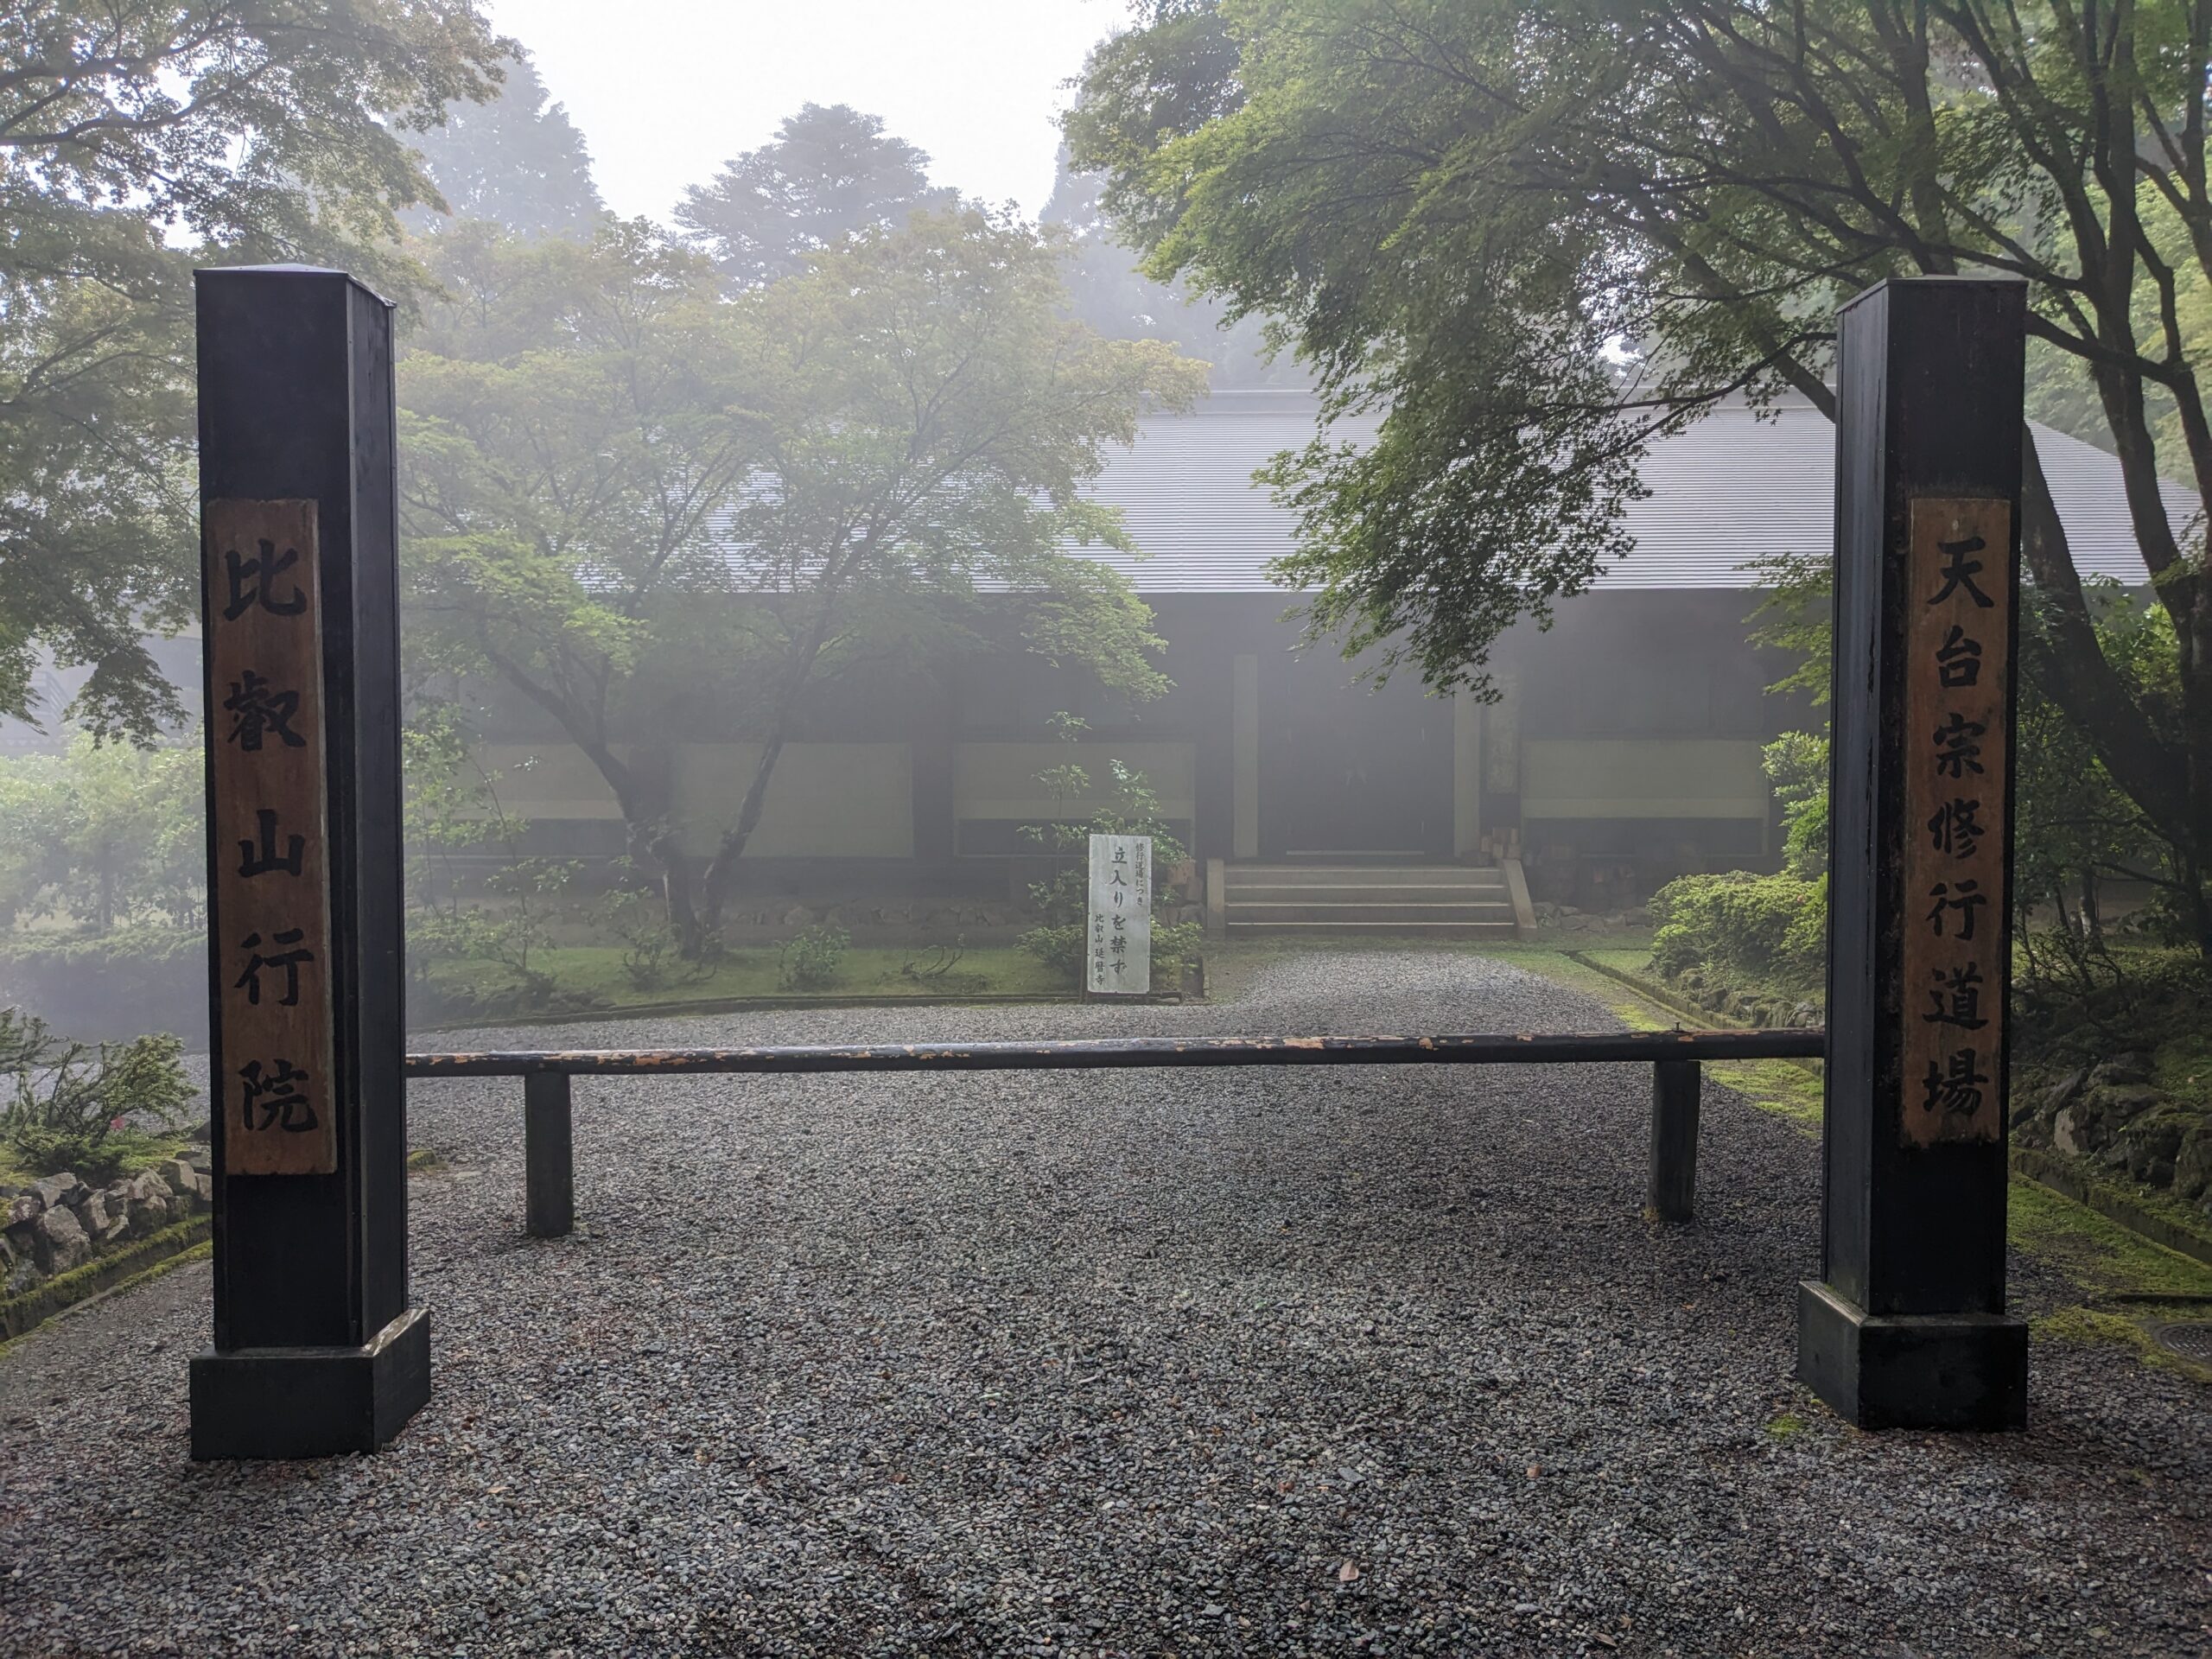 Gyoin Entrance, Enryakuji, Mt. Hiei